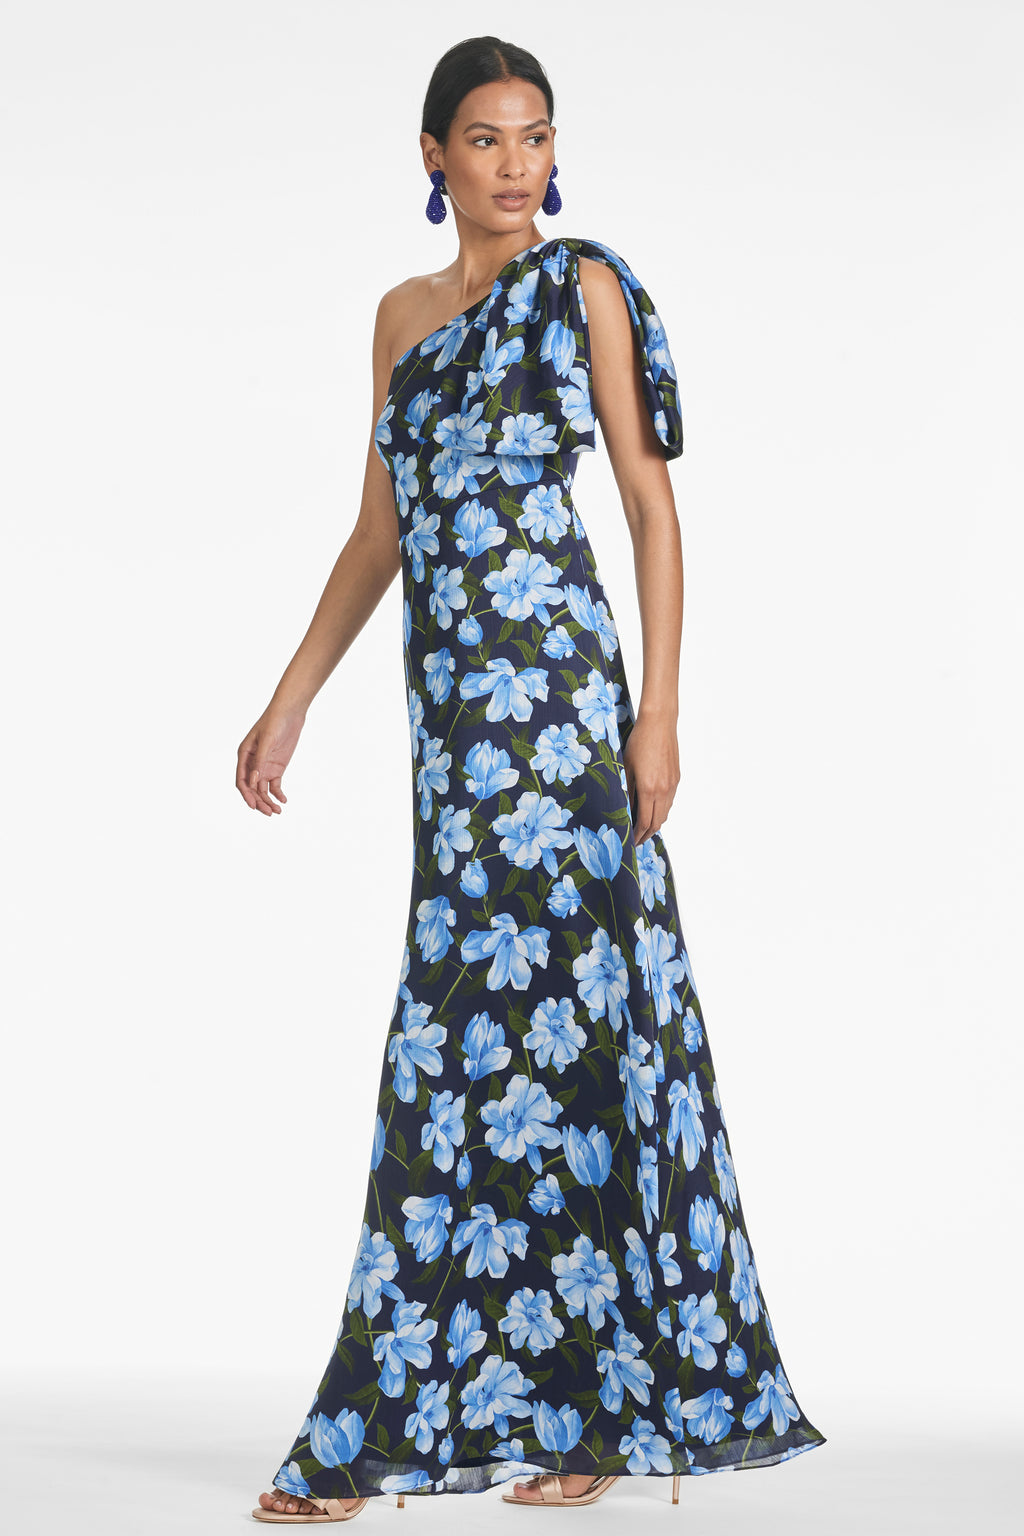 Chelsea Gown in Ocean Blue Magnolia - Sachin & Babi